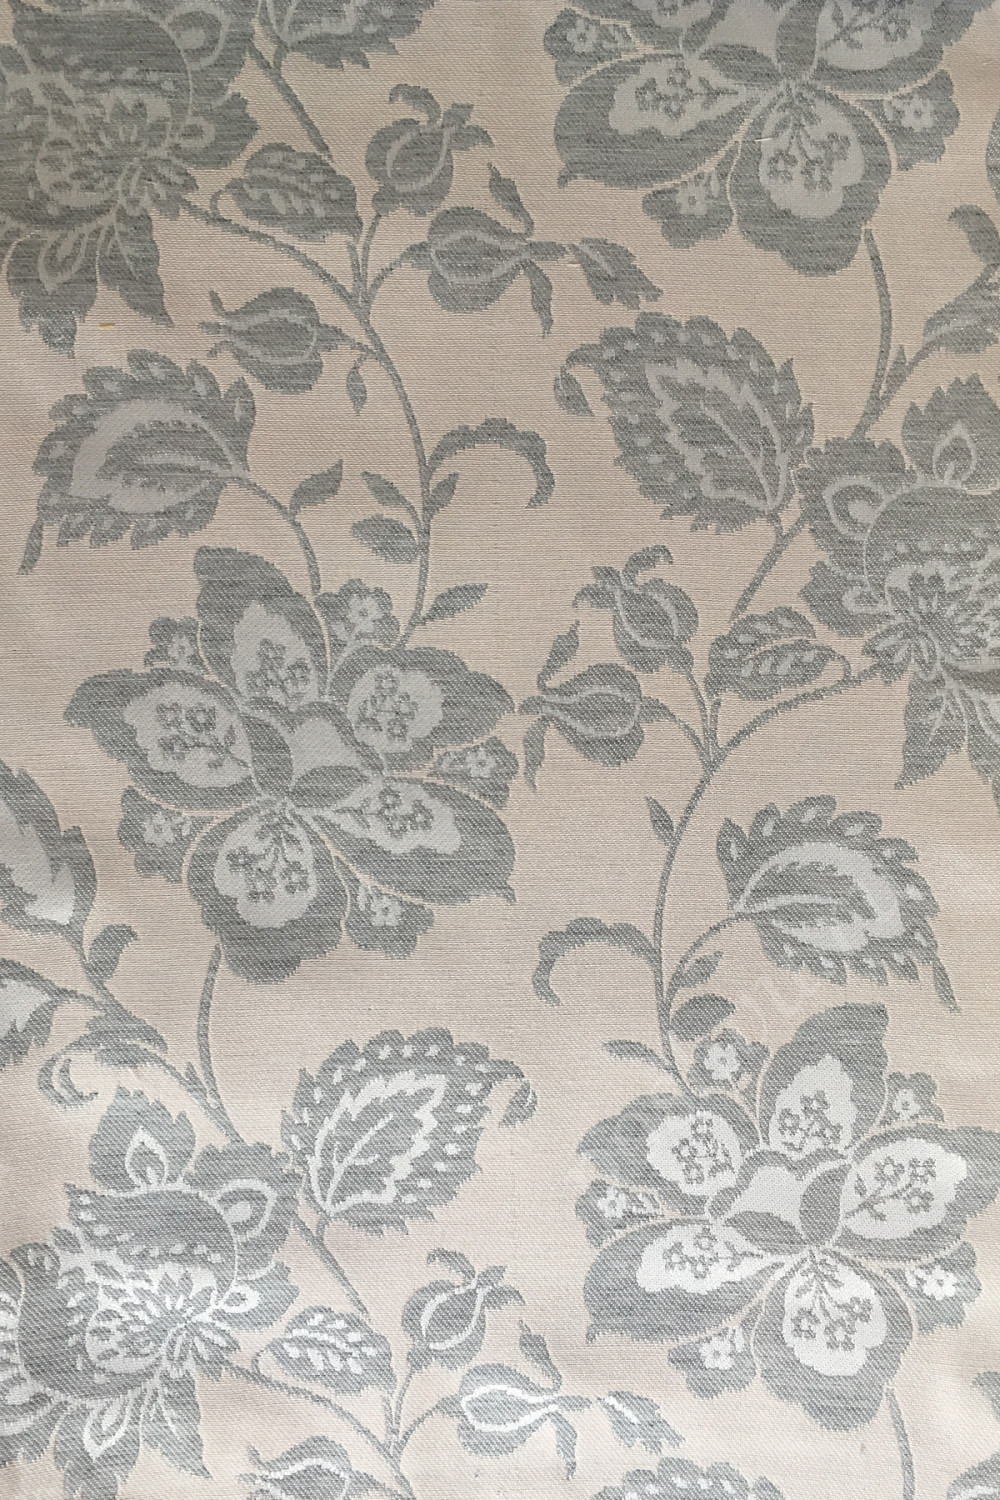 Портьерная ткань жаккард SUN JACOBEAN серый растительный орнамент на розовом фоне (раппорт 35х31см)